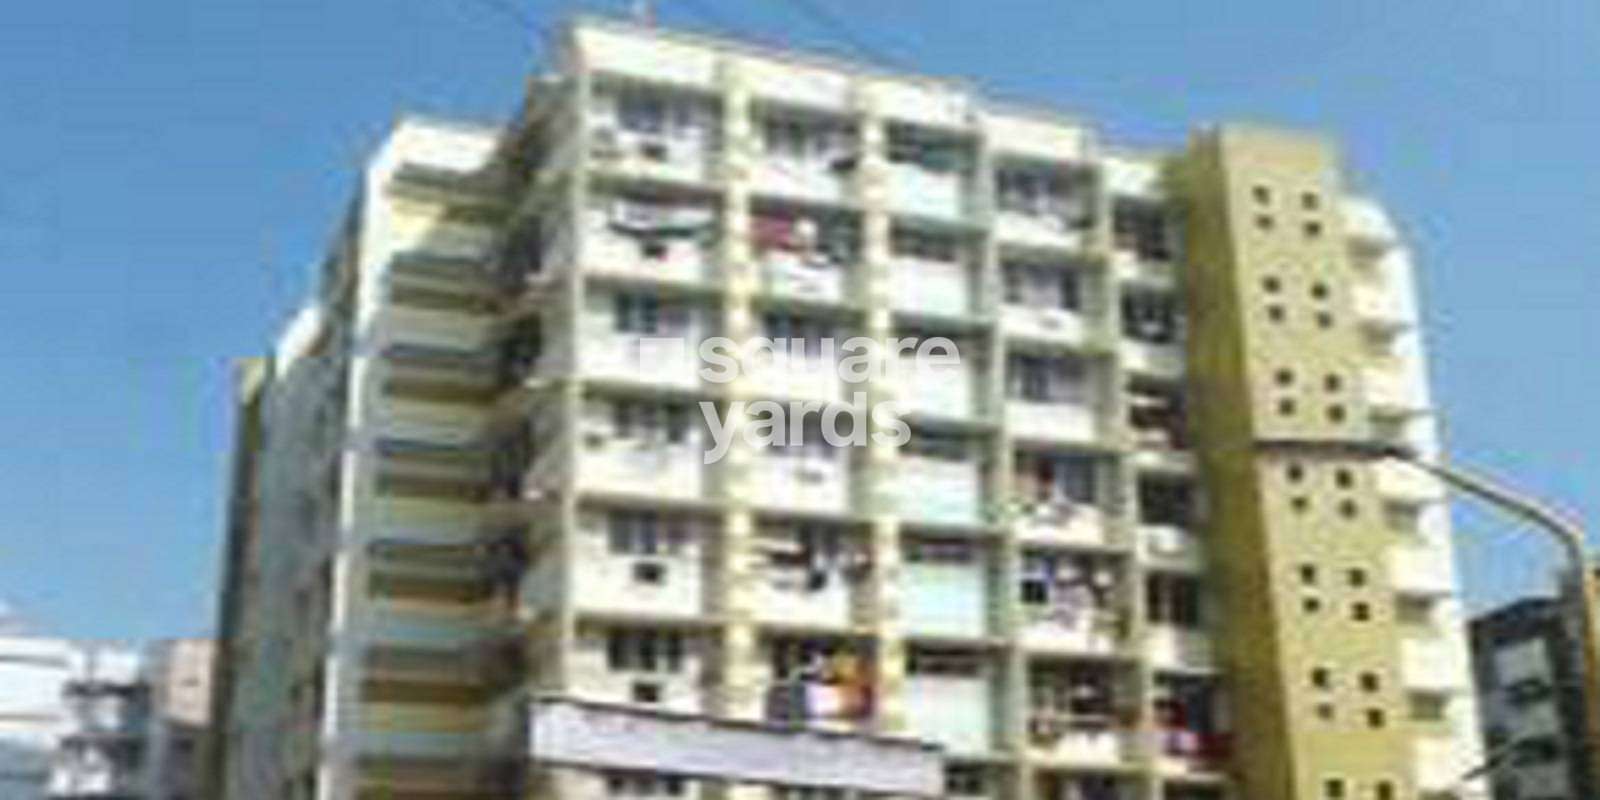 Vajreshwari Apartment Cover Image